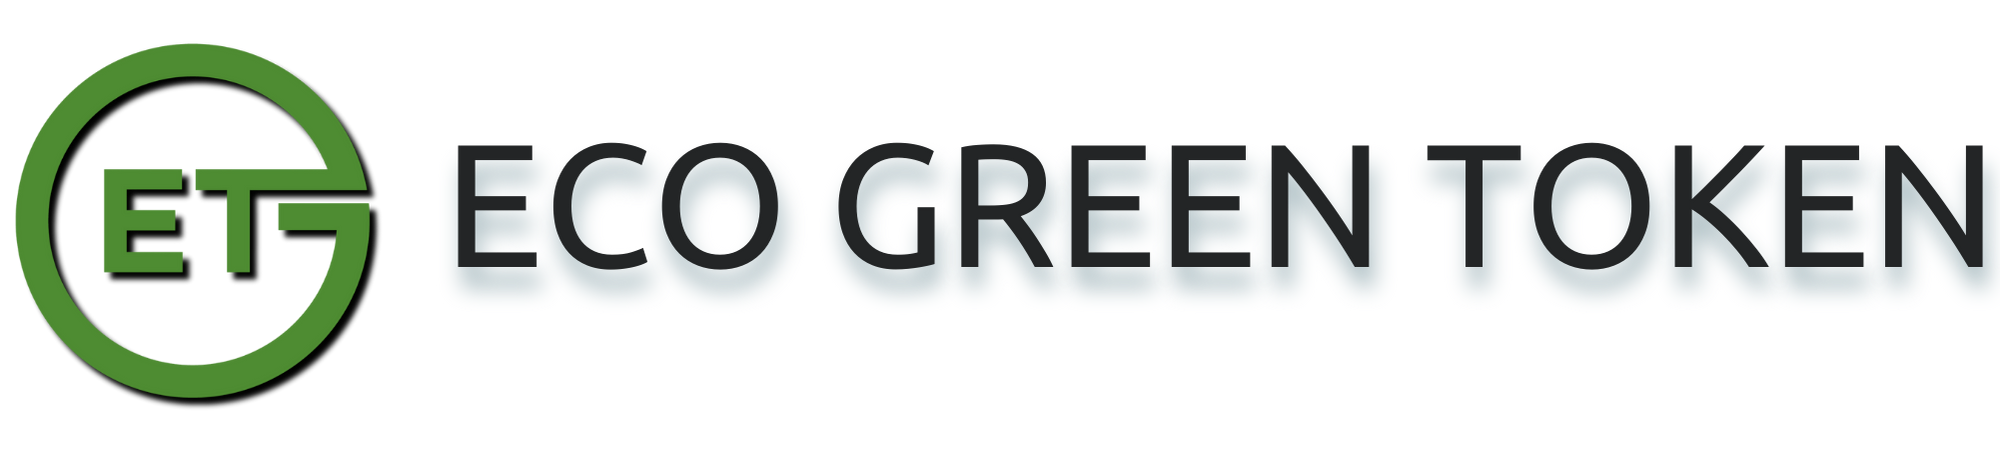 Eco Green Token